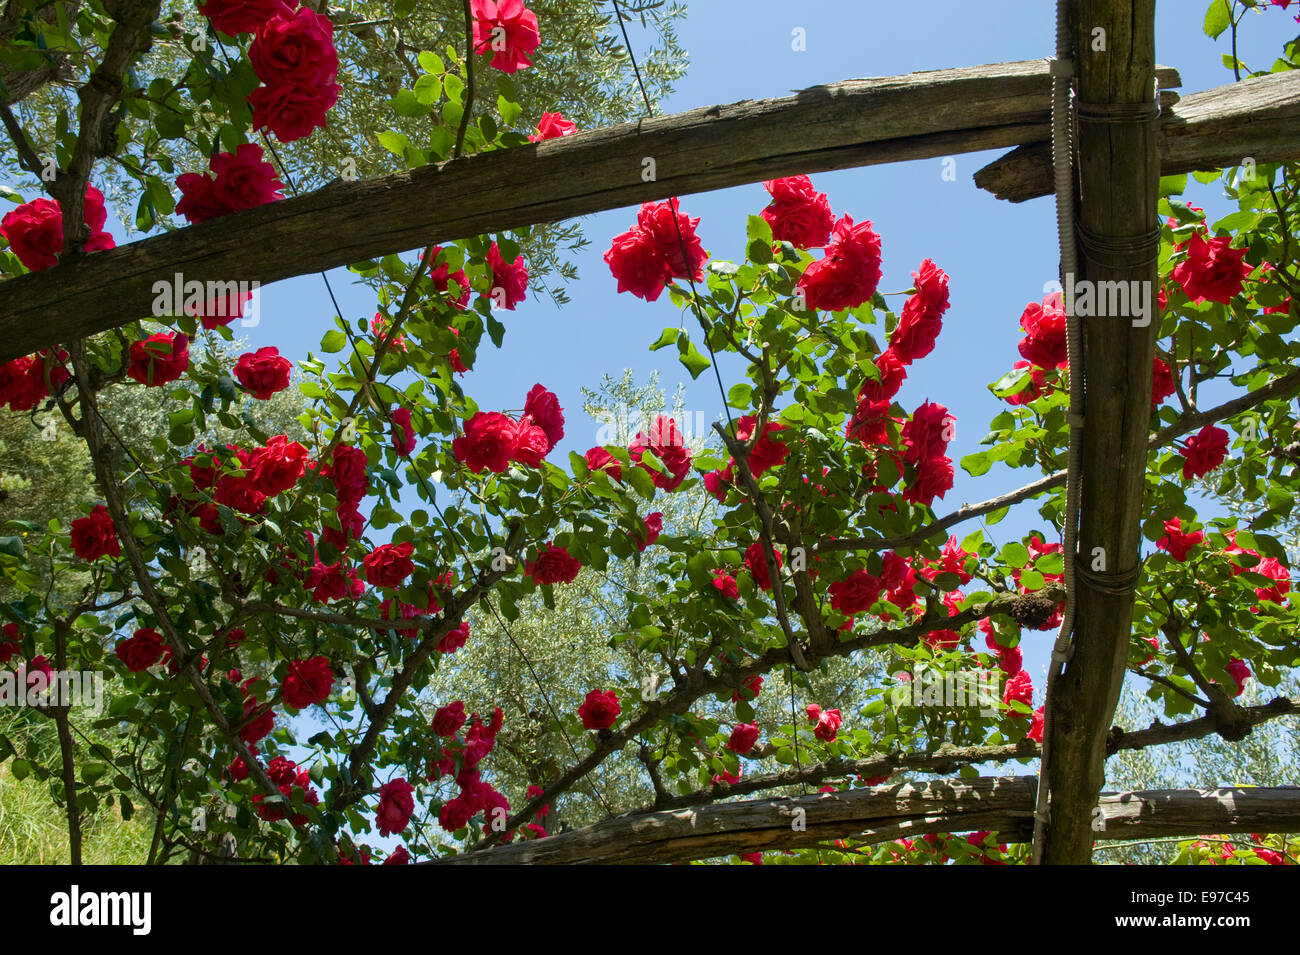 Rose rampicanti con piena fioritura rossa al di sopra di un traliccio di legno in un giardino sul mare del Golfo di Napoli nei pressi di Sorrento in Italia, può Foto Stock